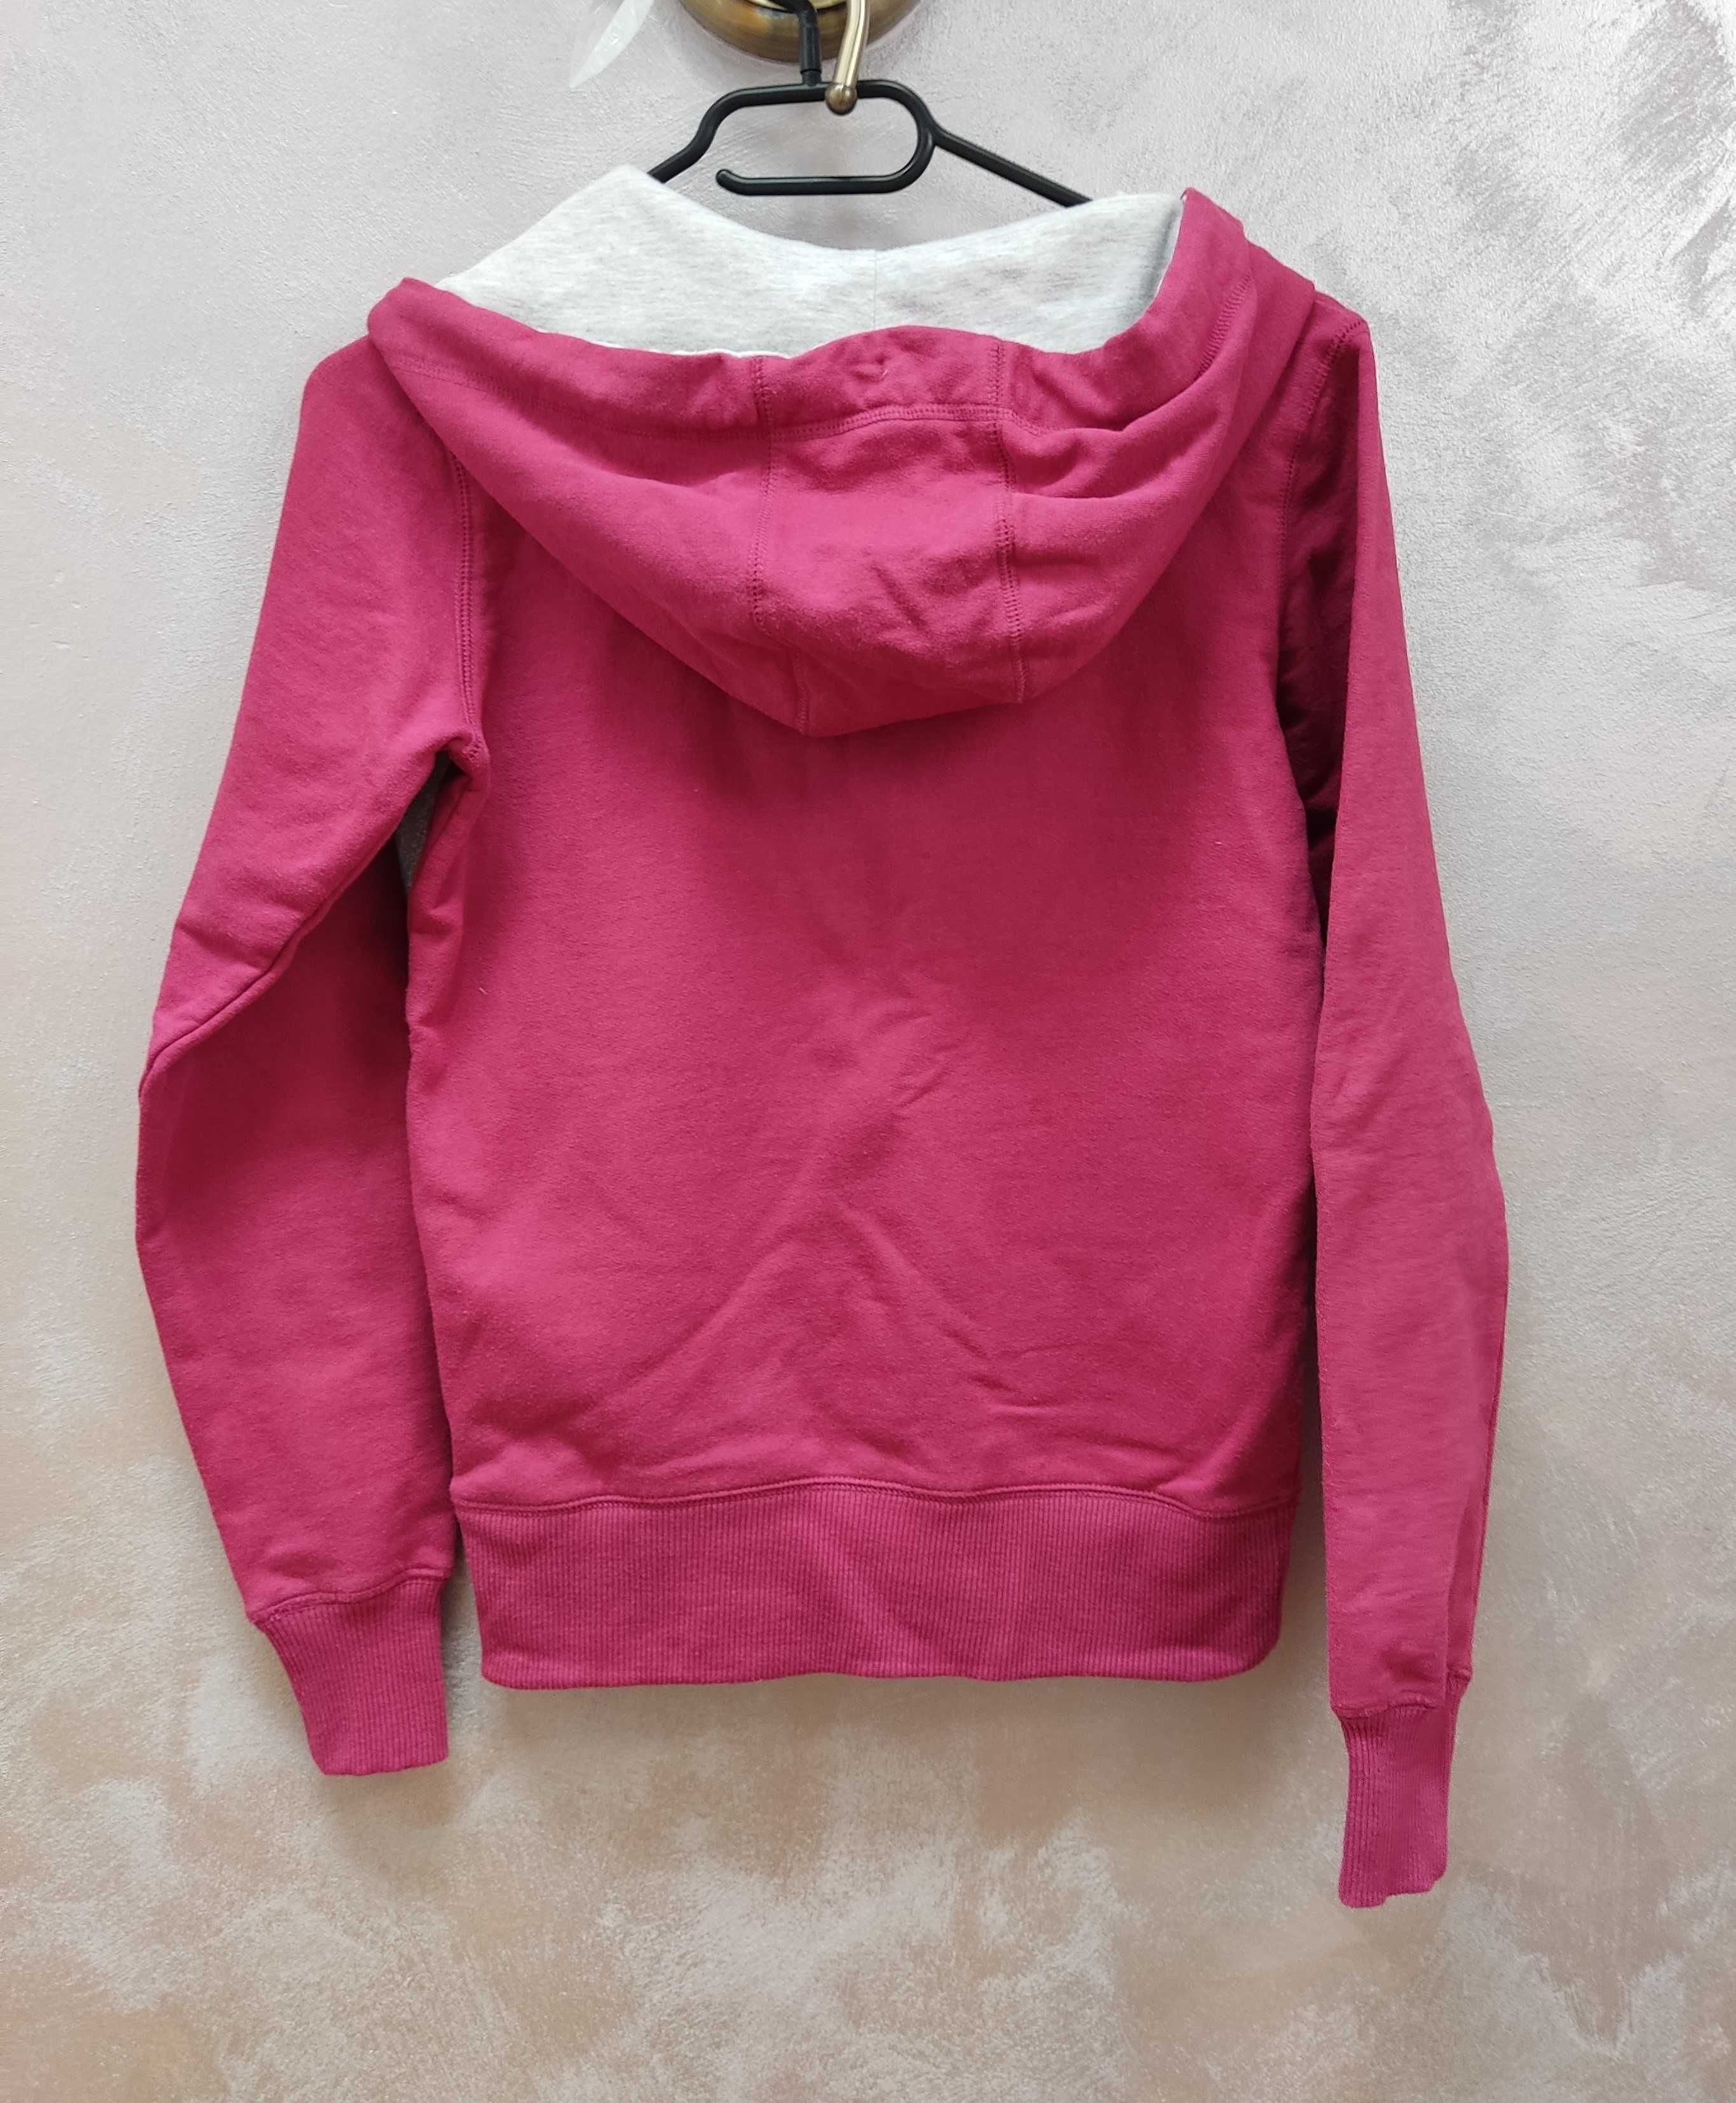 Bluza damska młodzieżowa rozpinana z kapturem hoodie różowa ciemny róż